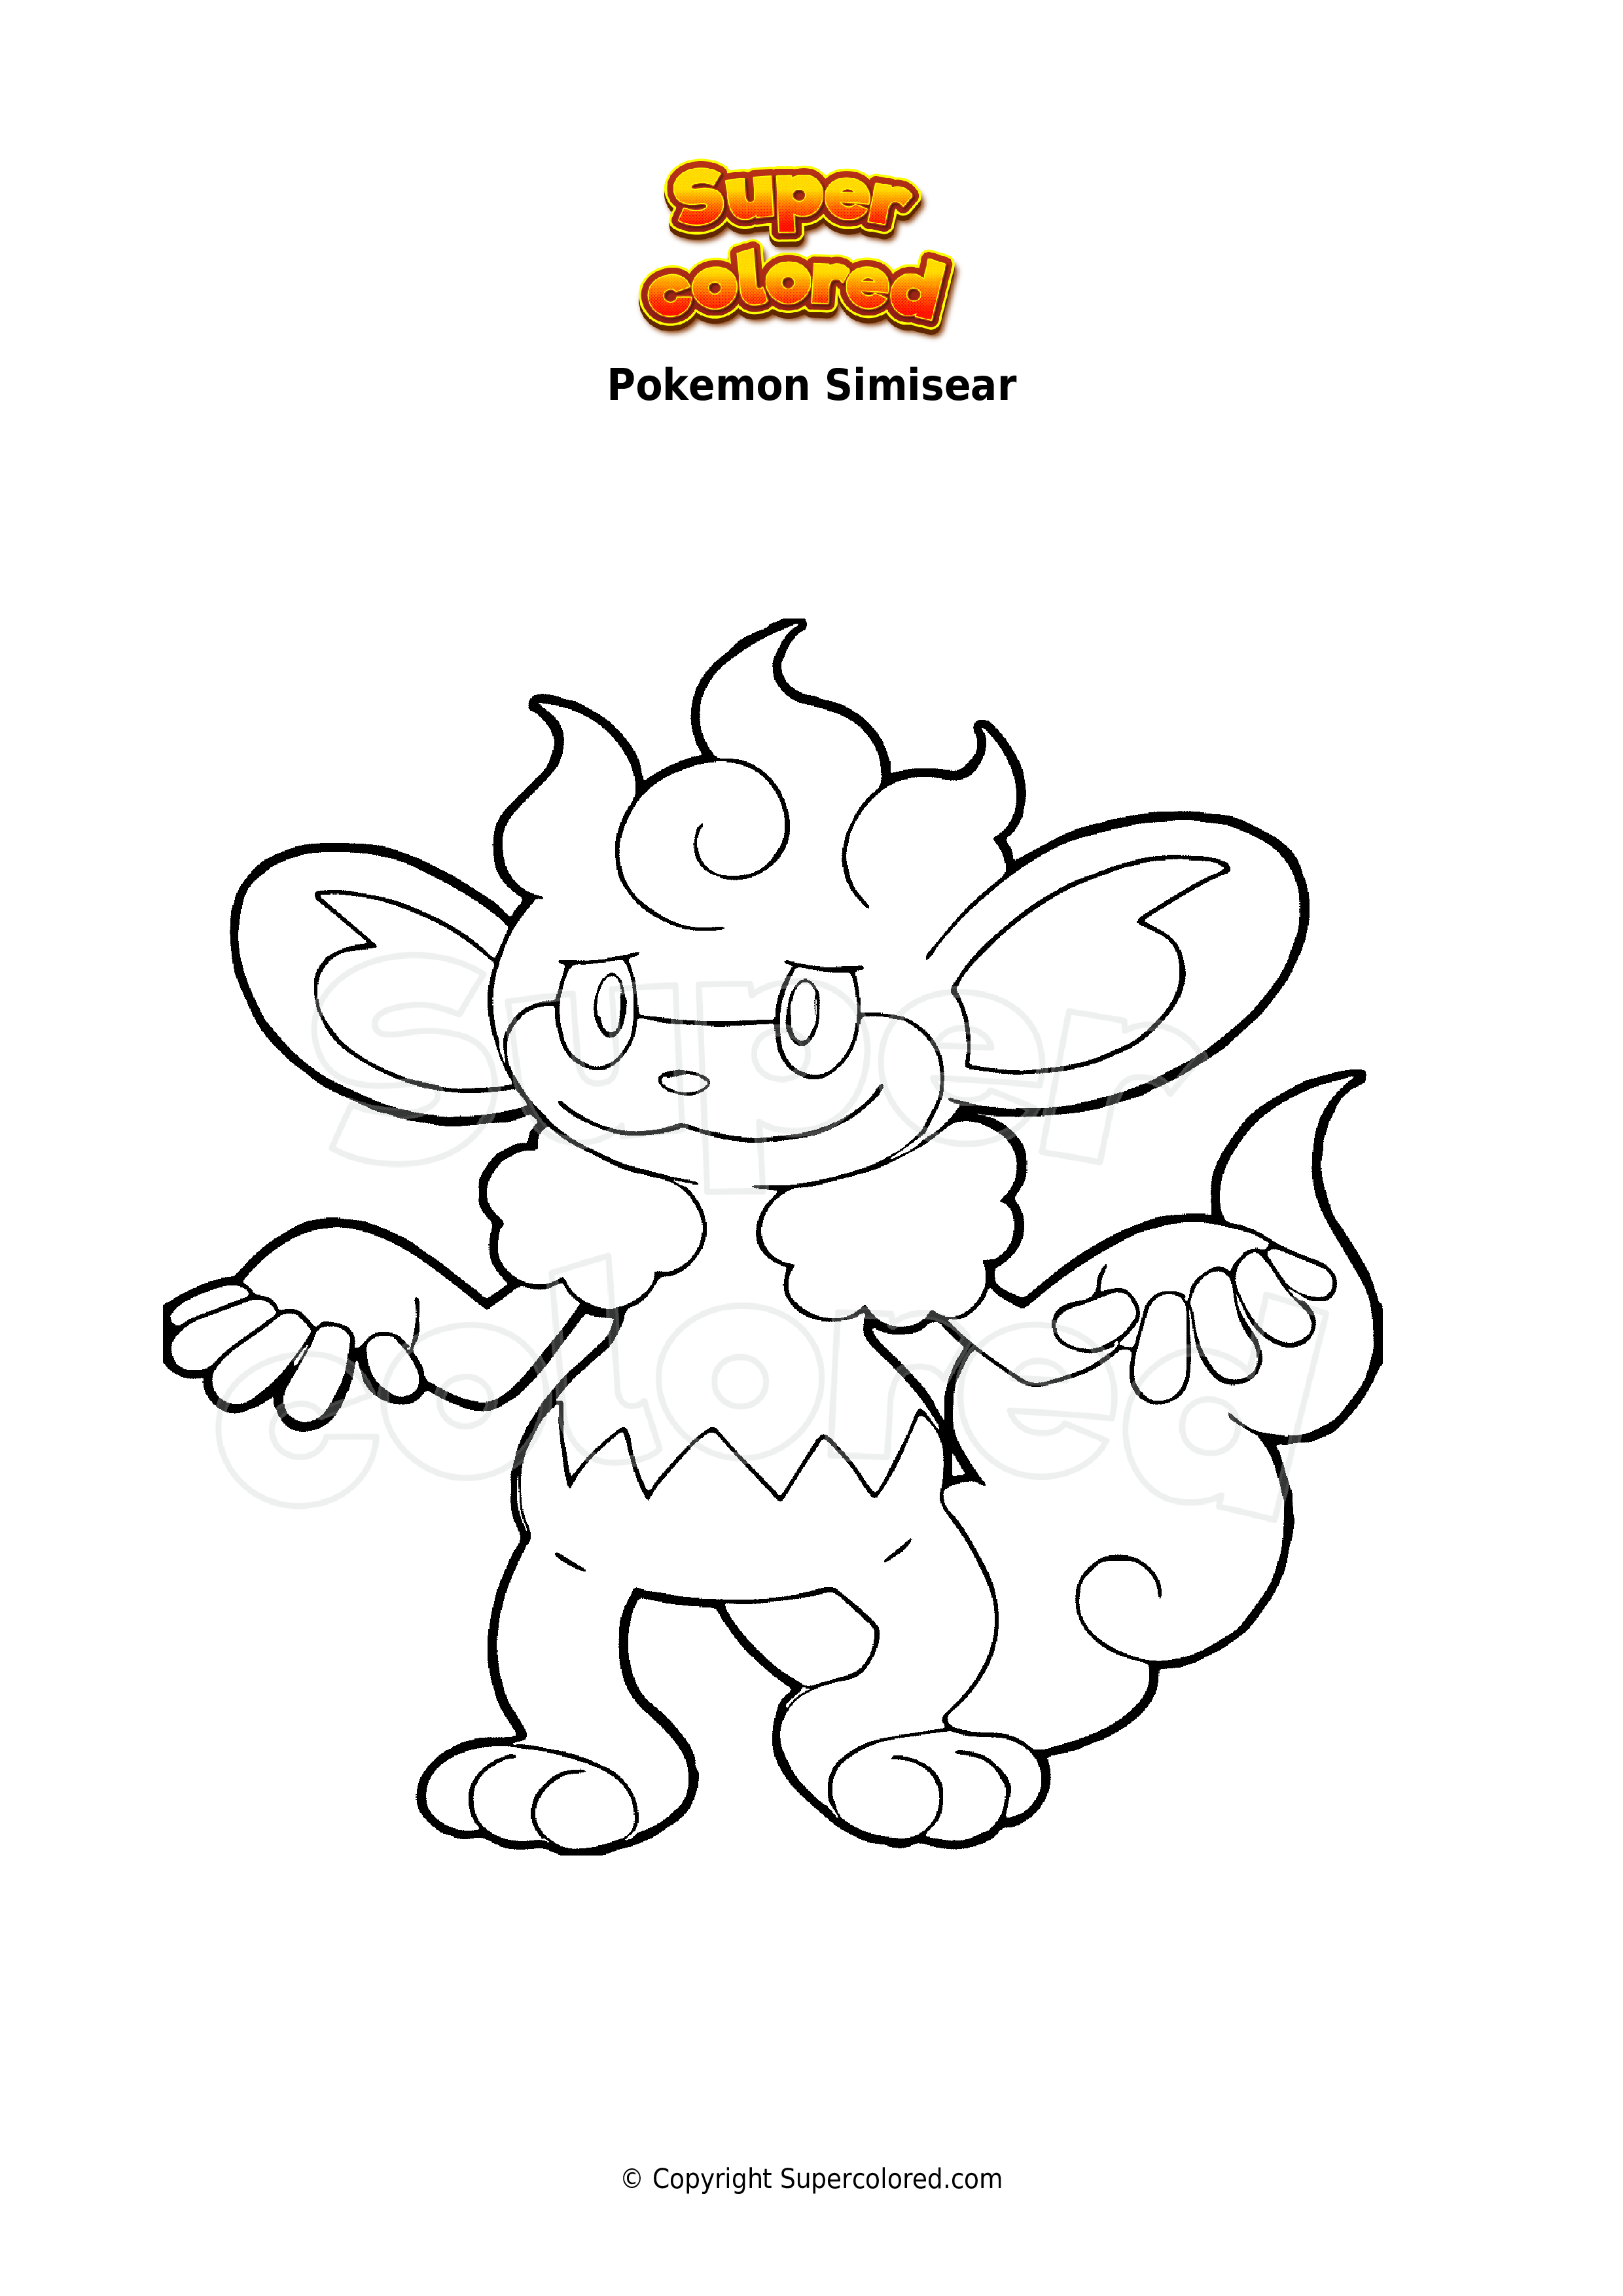 Coloring page Pokemon Simisear - Supercolored.com